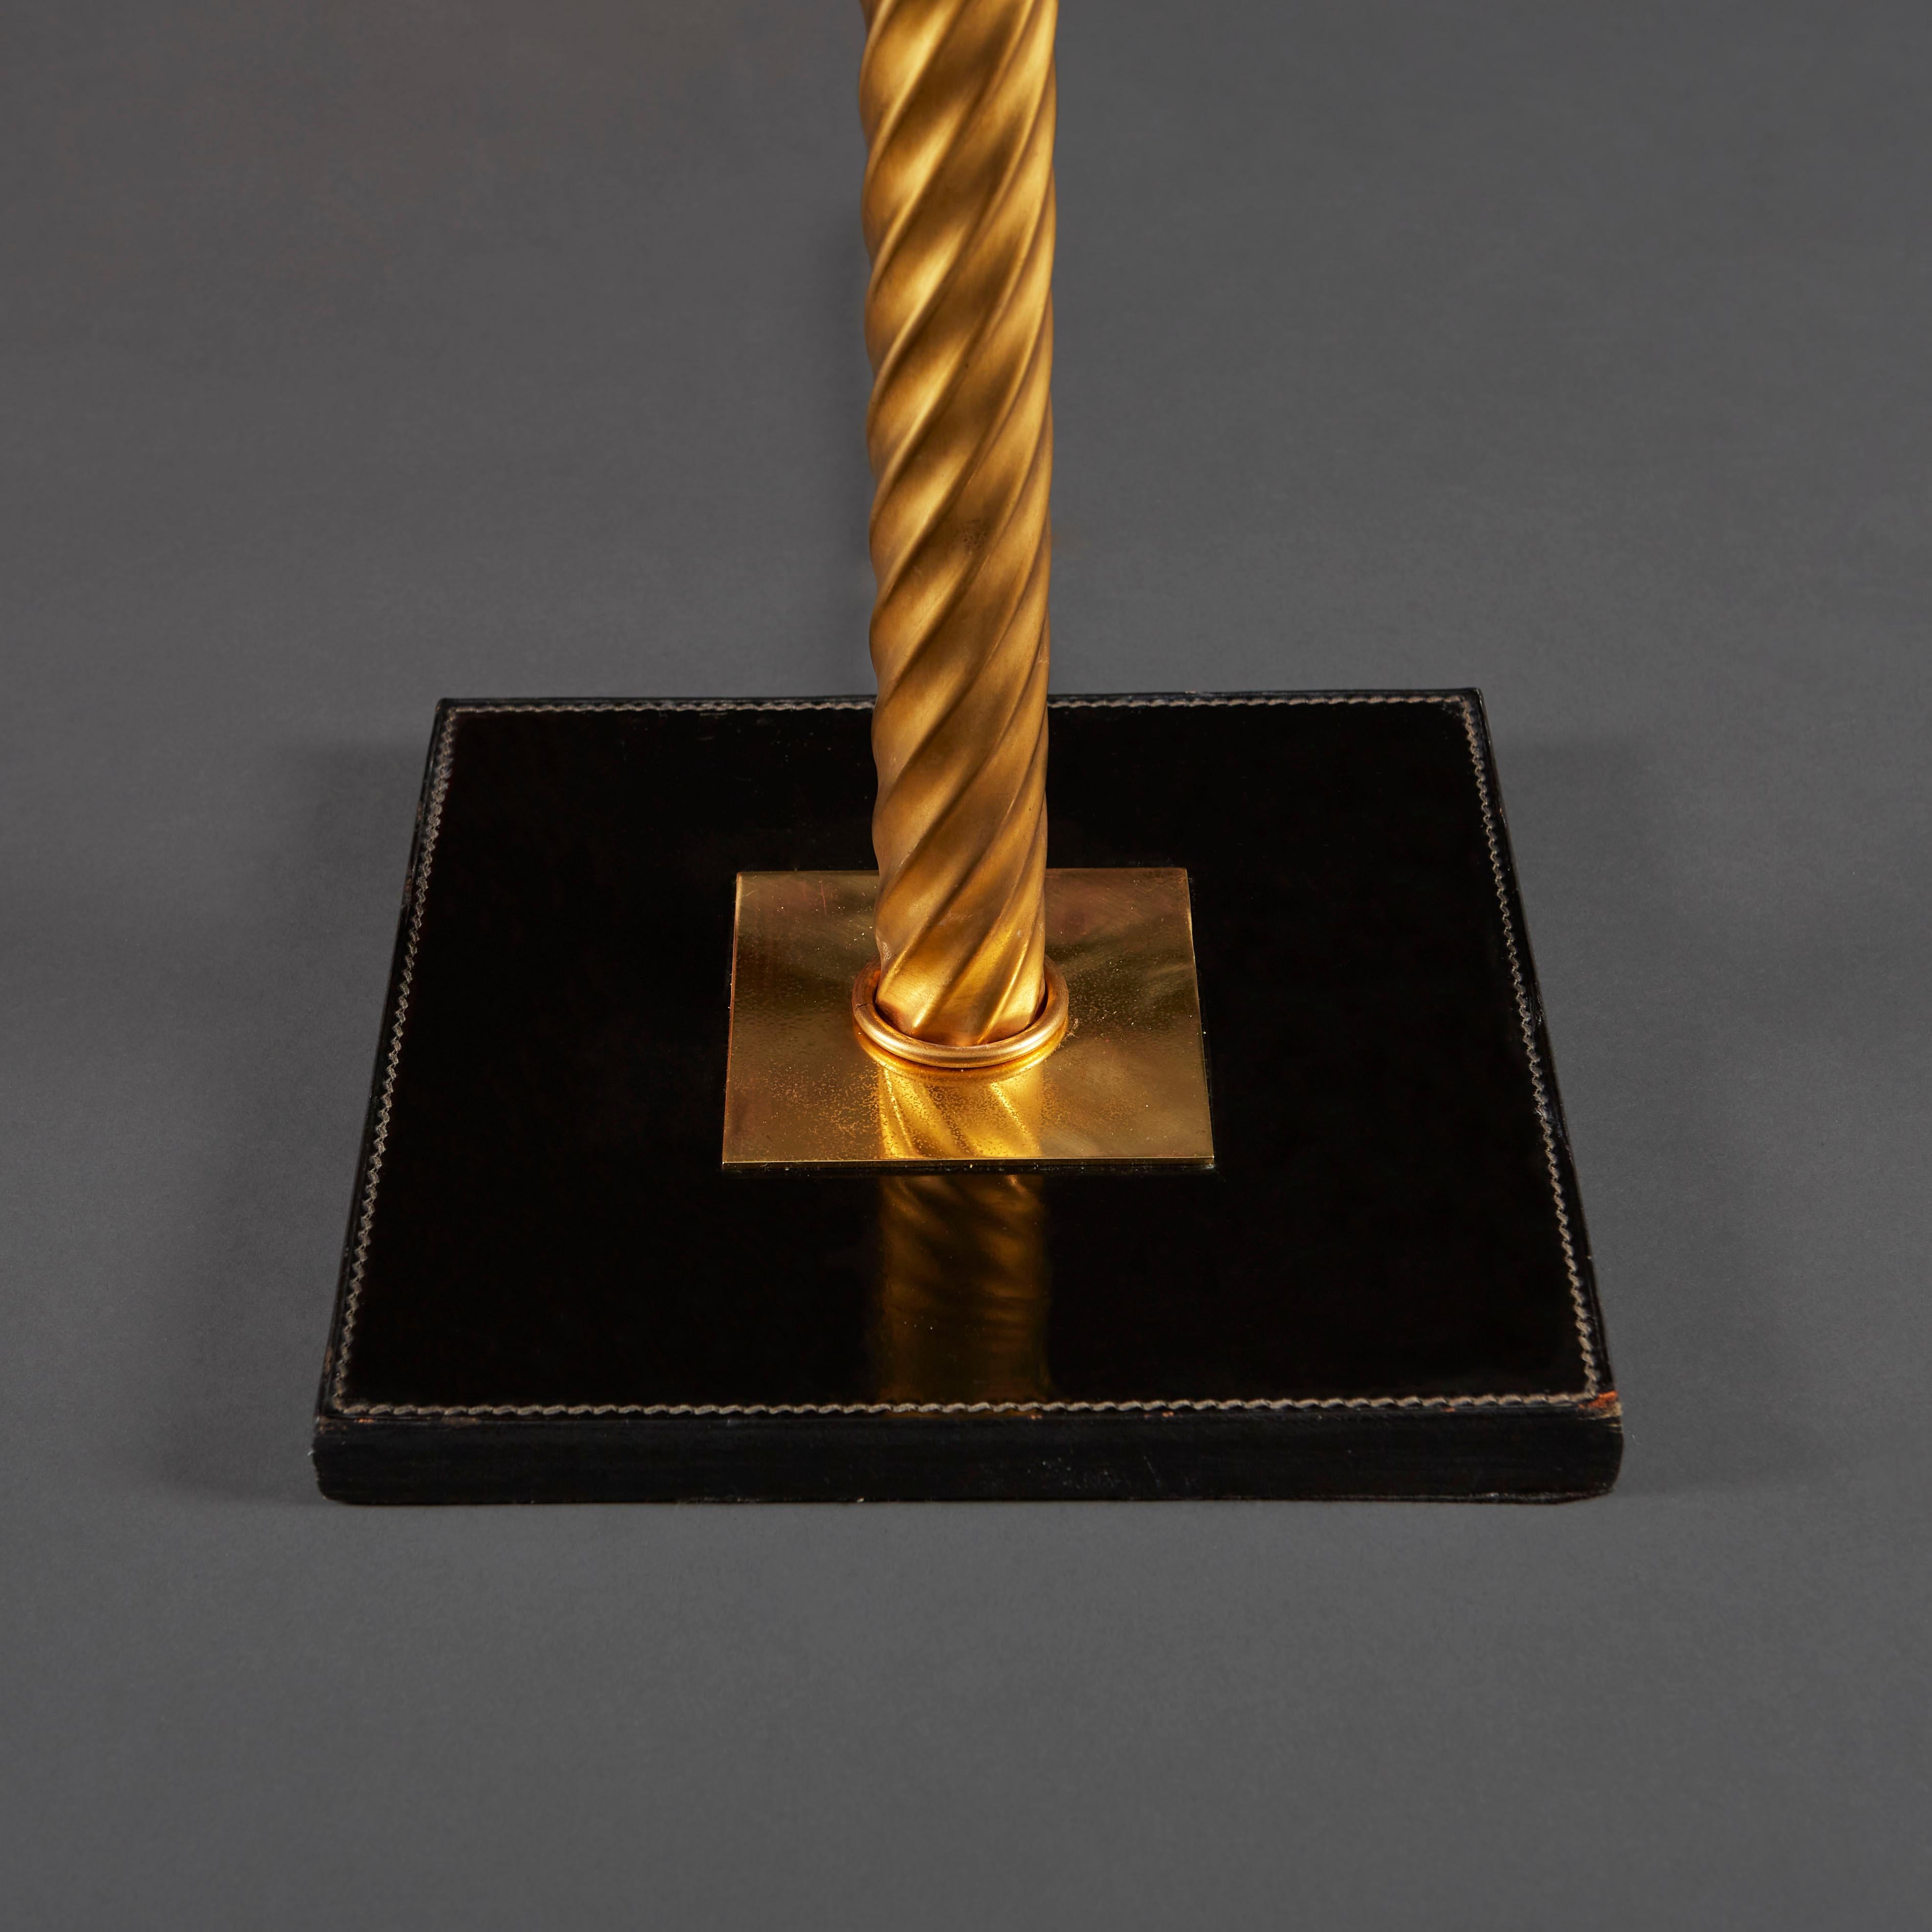 Une inhabituelle lampe à colonne en laiton torsadé montée sur une base carrée en cuir noir, d'après Jacques Adnet.

Veuillez noter que l'abat-jour n'est pas inclus. 

Actuellement câblé pour le Royaume-Uni.